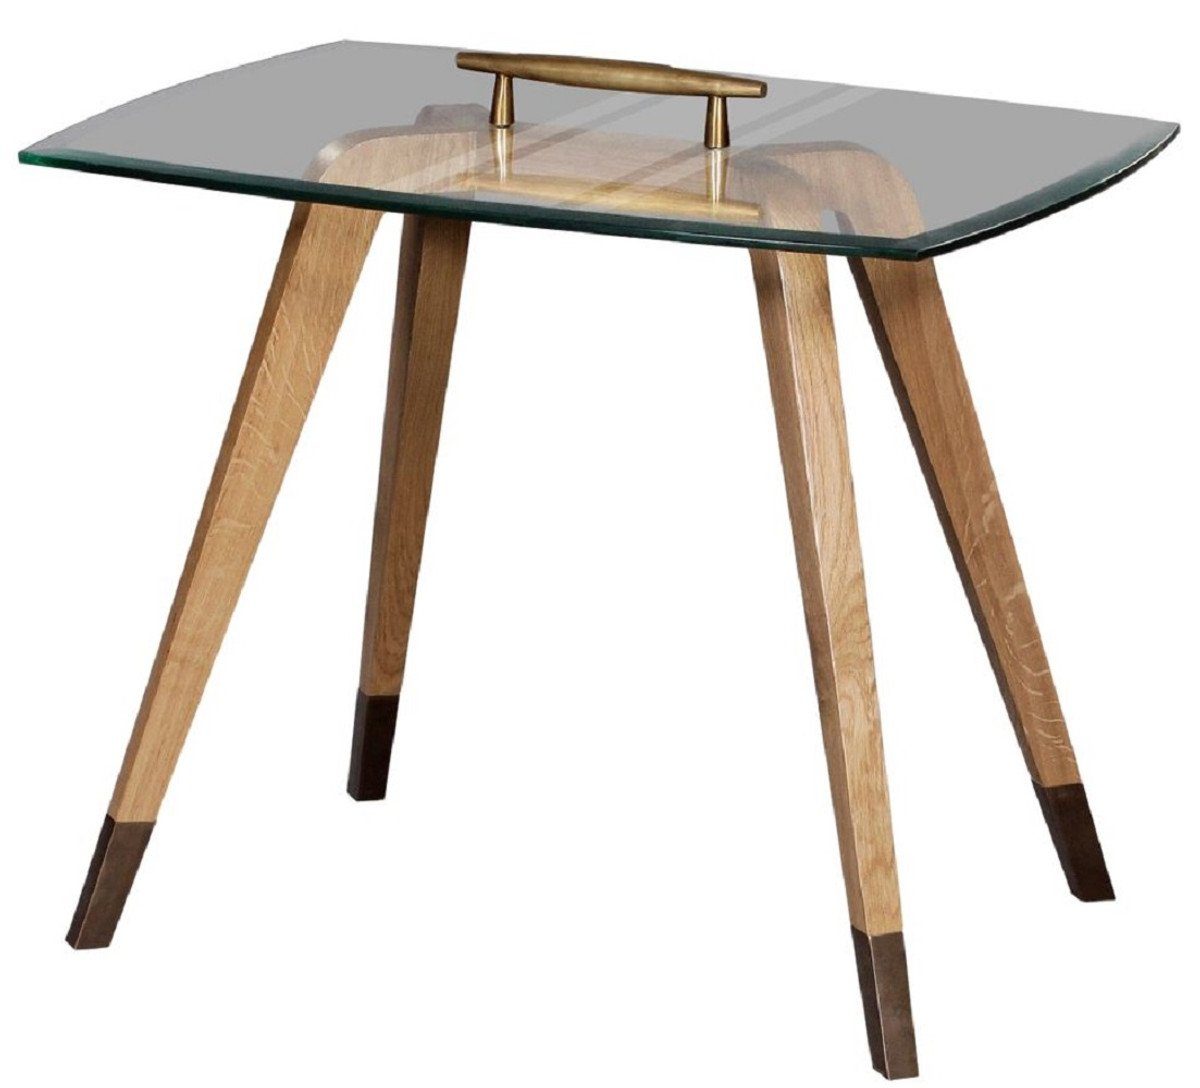 Casa Padrino Beistelltisch Luxus Beistelltisch Naturfarben / Braun / Messingfarben 60 x 40 x H. 53 cm - Moderner Tisch mit Glasplatte und Tragegriff - Möbel - Luxus Kollektion